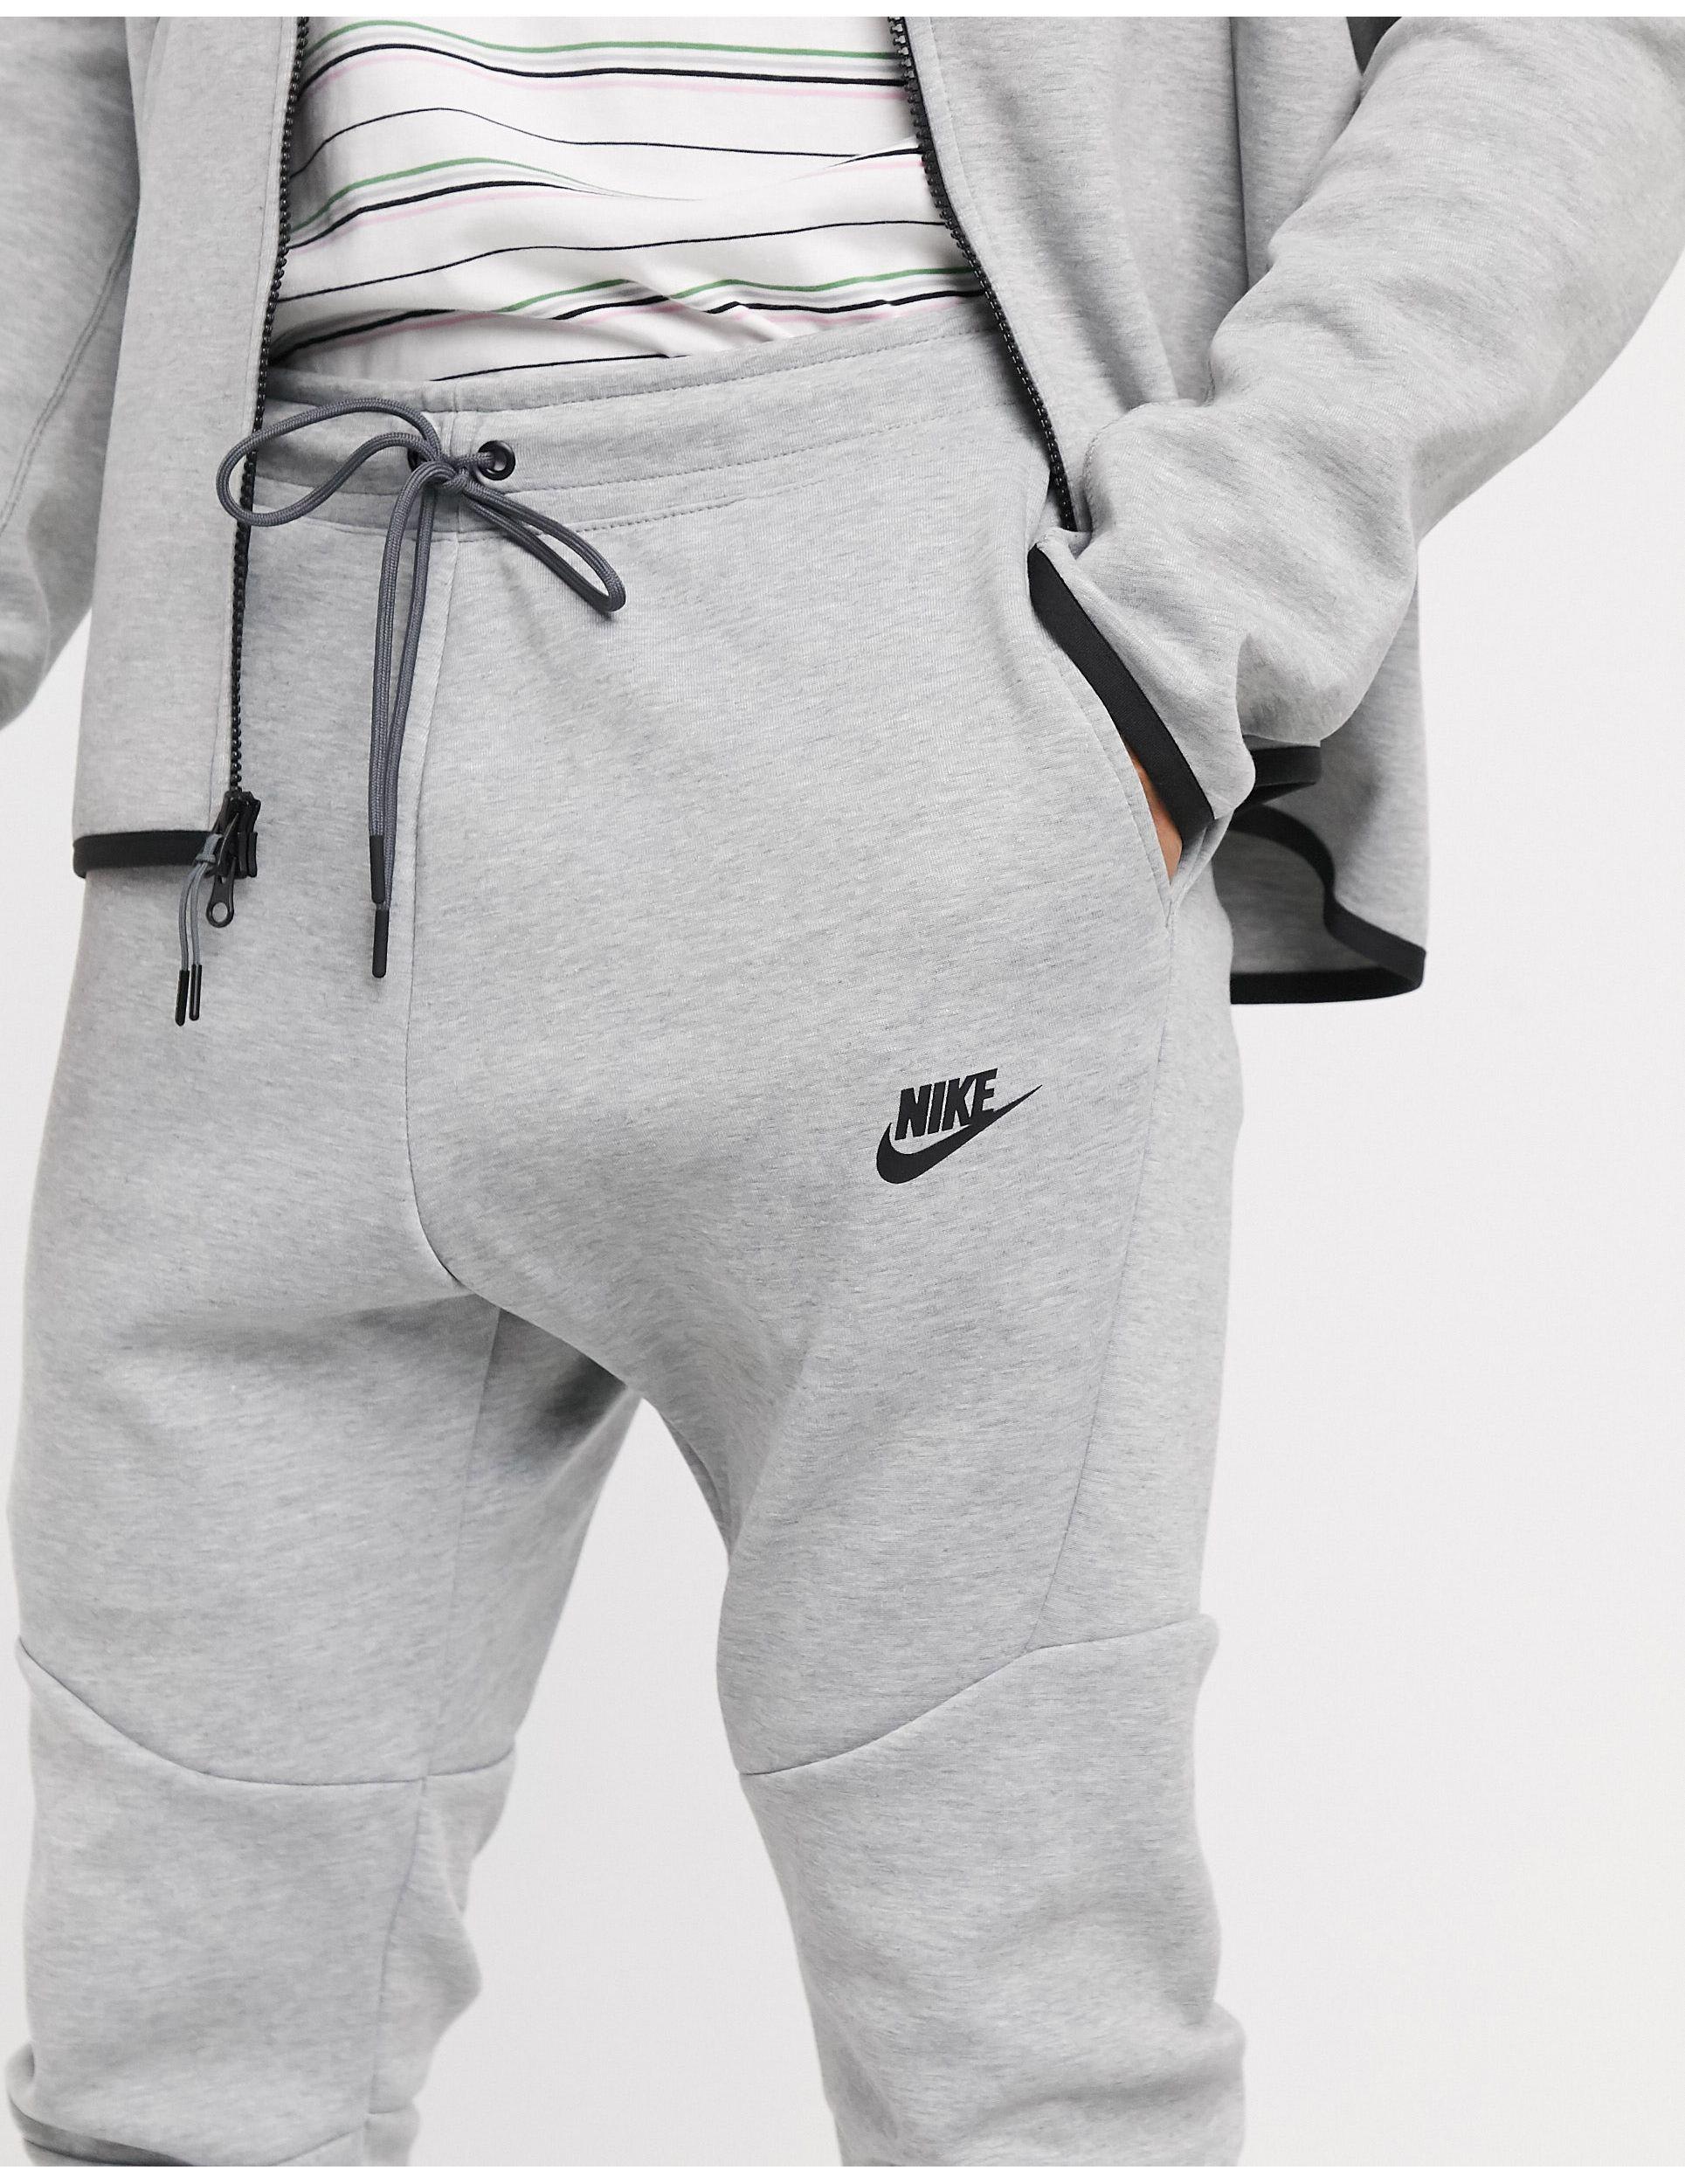 Nike Sportswear Tech Fleece Joggers in Dark Grey Heather,Black (Gray) for  Men - Save 42% | Lyst